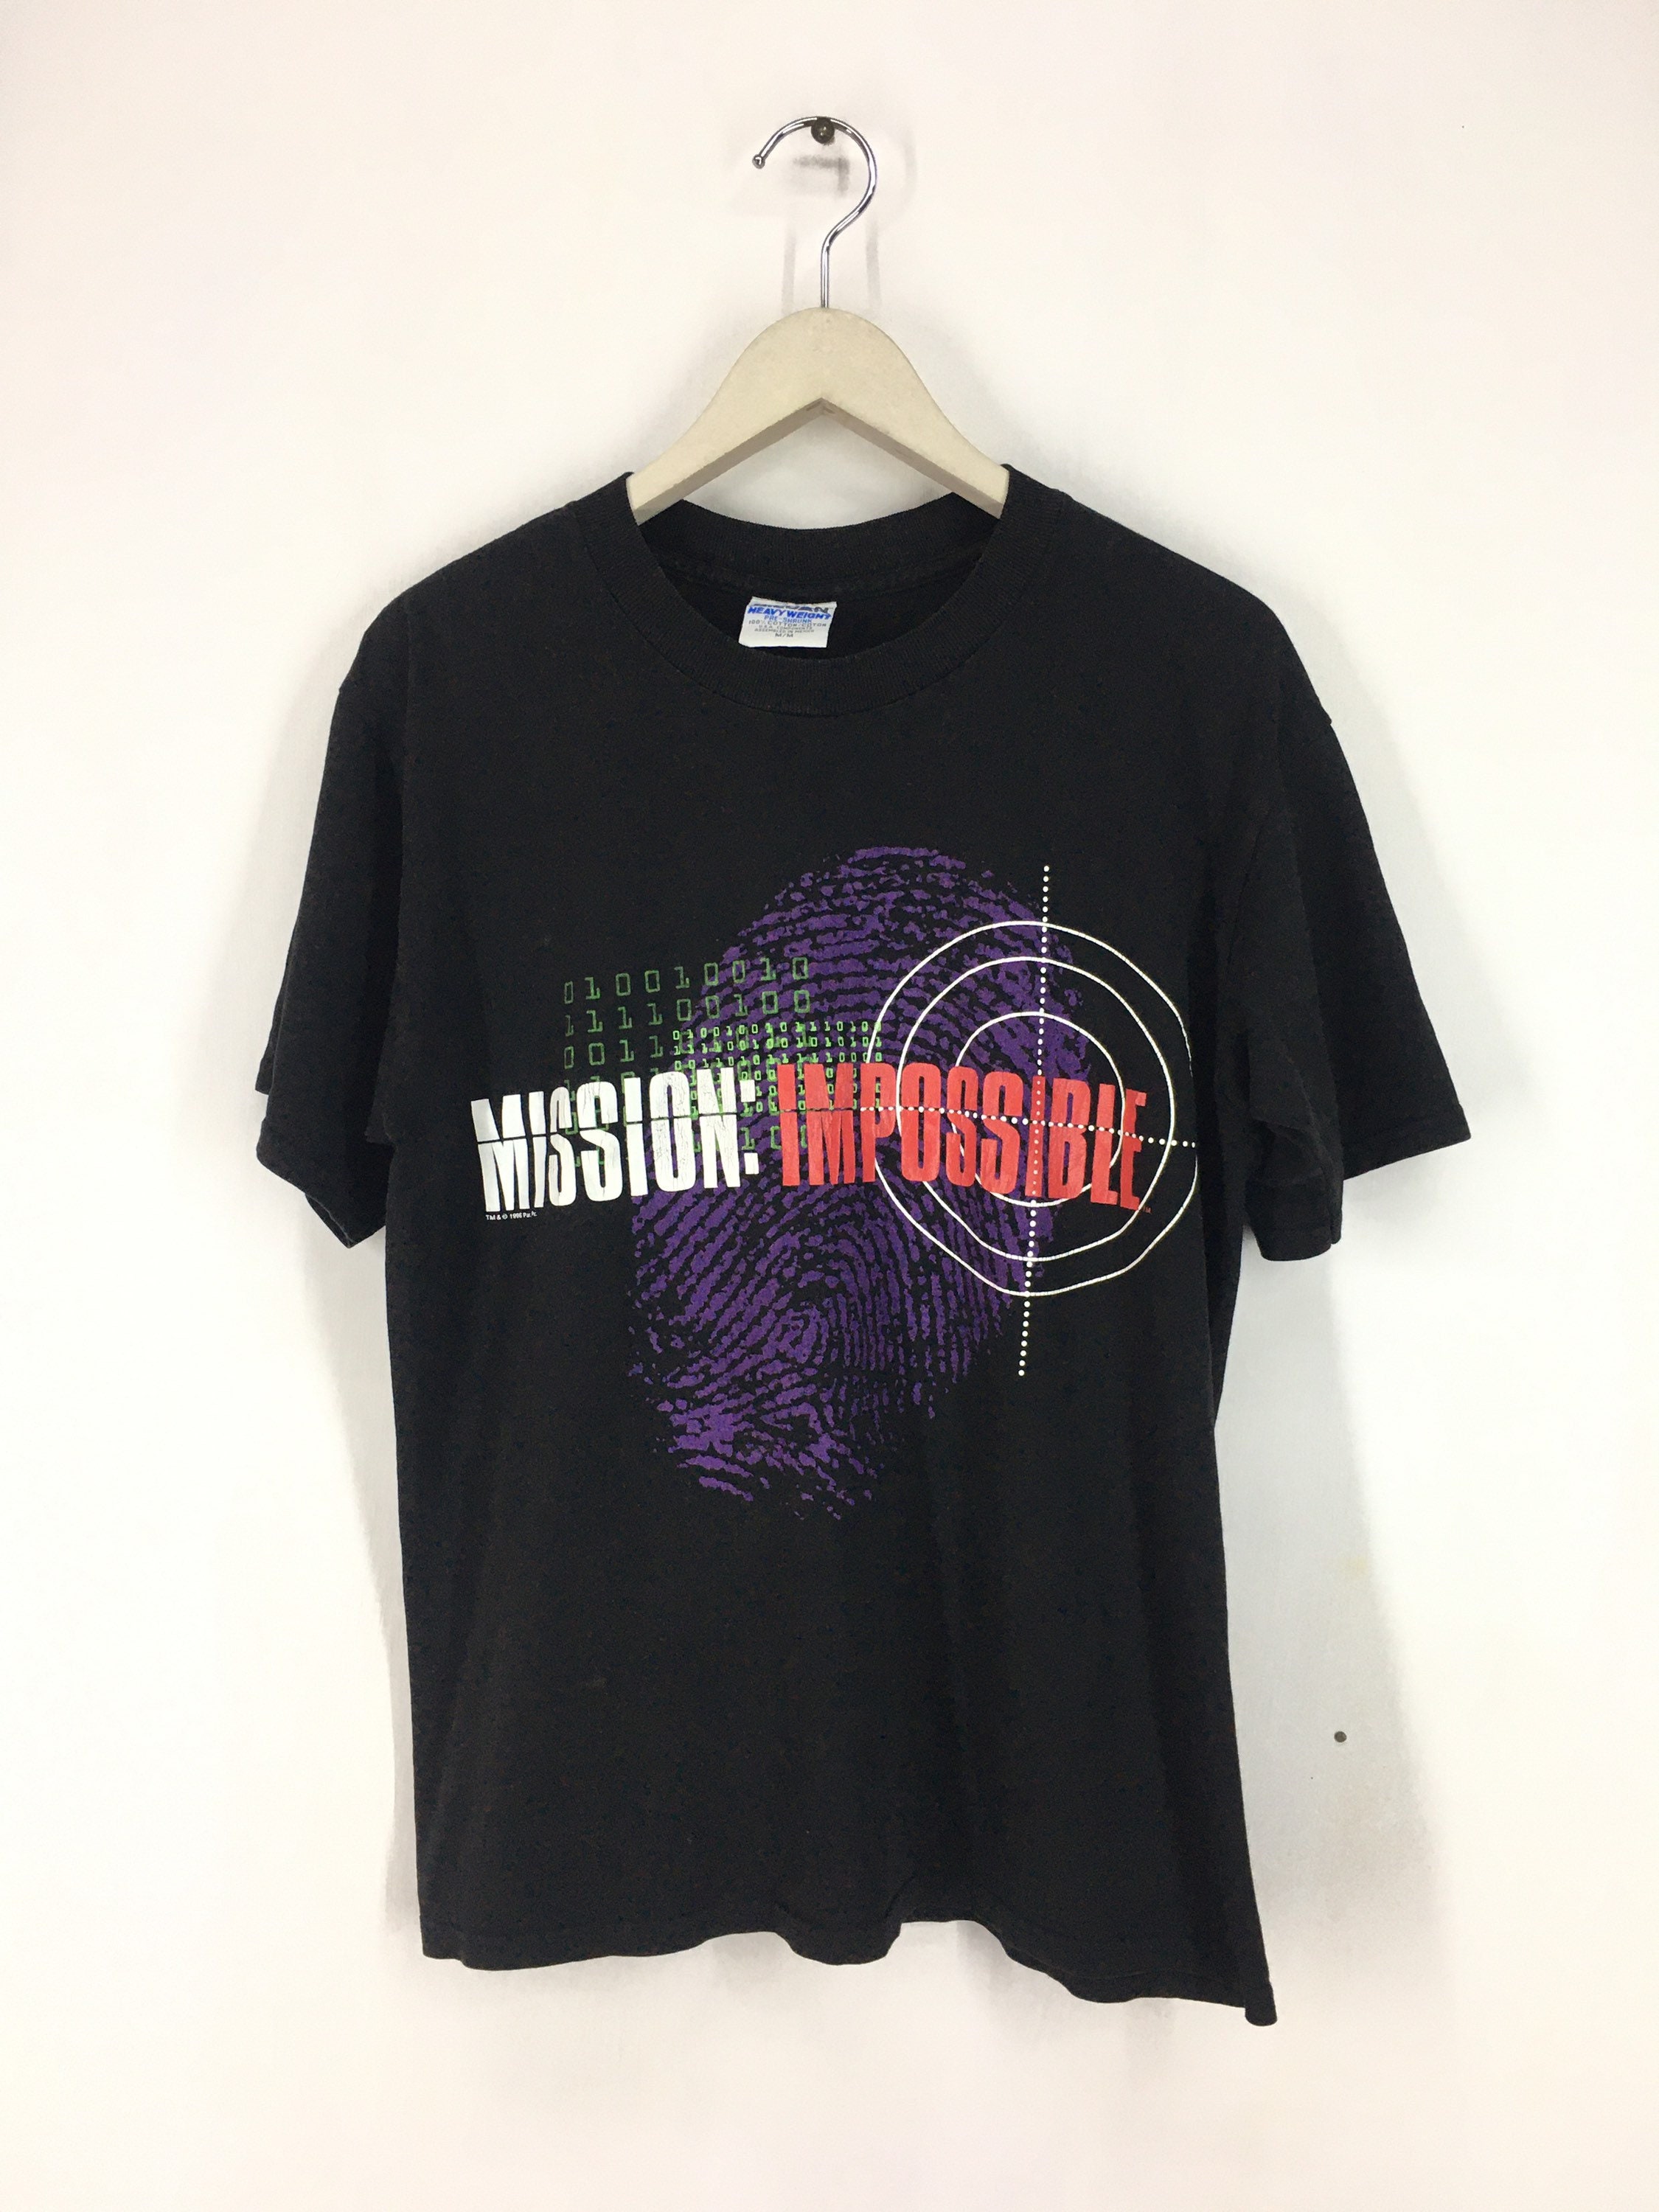 激安挑戦中 Mission impossible ミッションインポッシブル Tシャツ asakusa.sub.jp